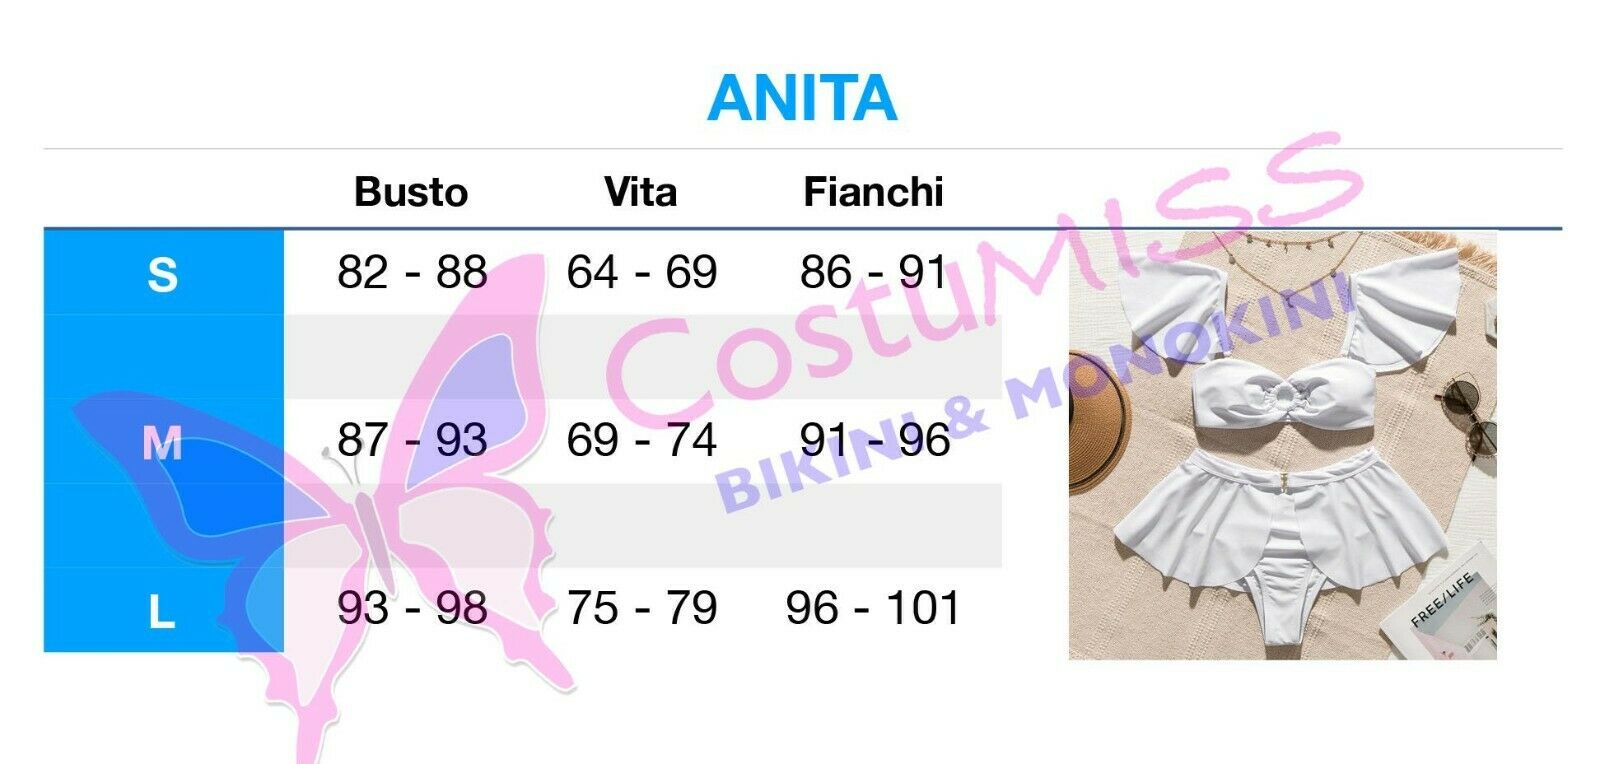 Anita bianco - Costumiss